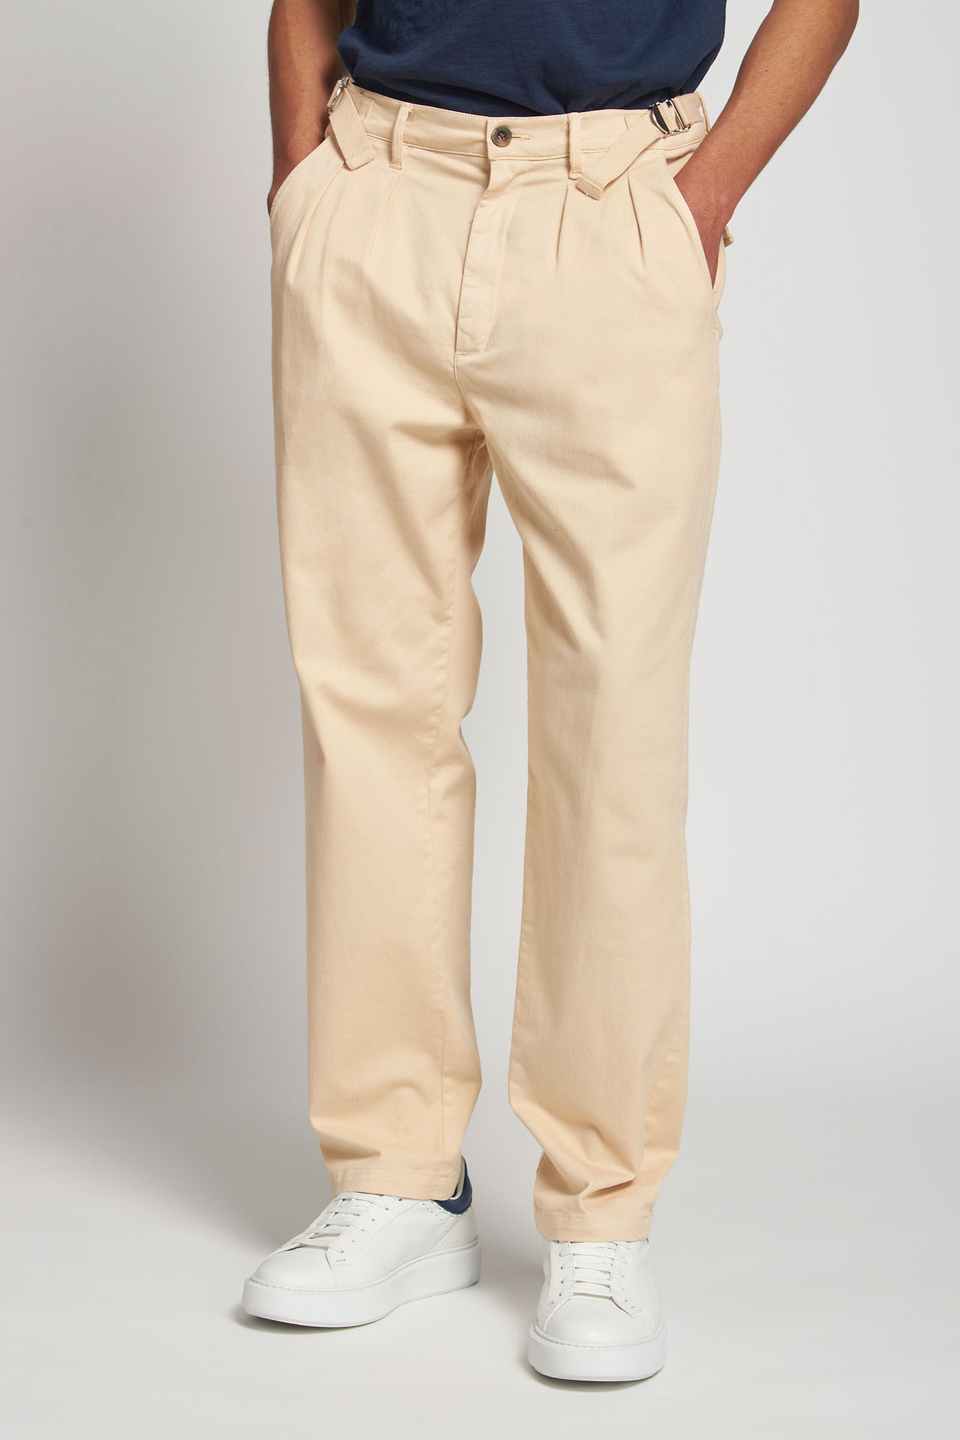 Pantalone da uomo modello chino regular fit - La Martina - Official Online Shop